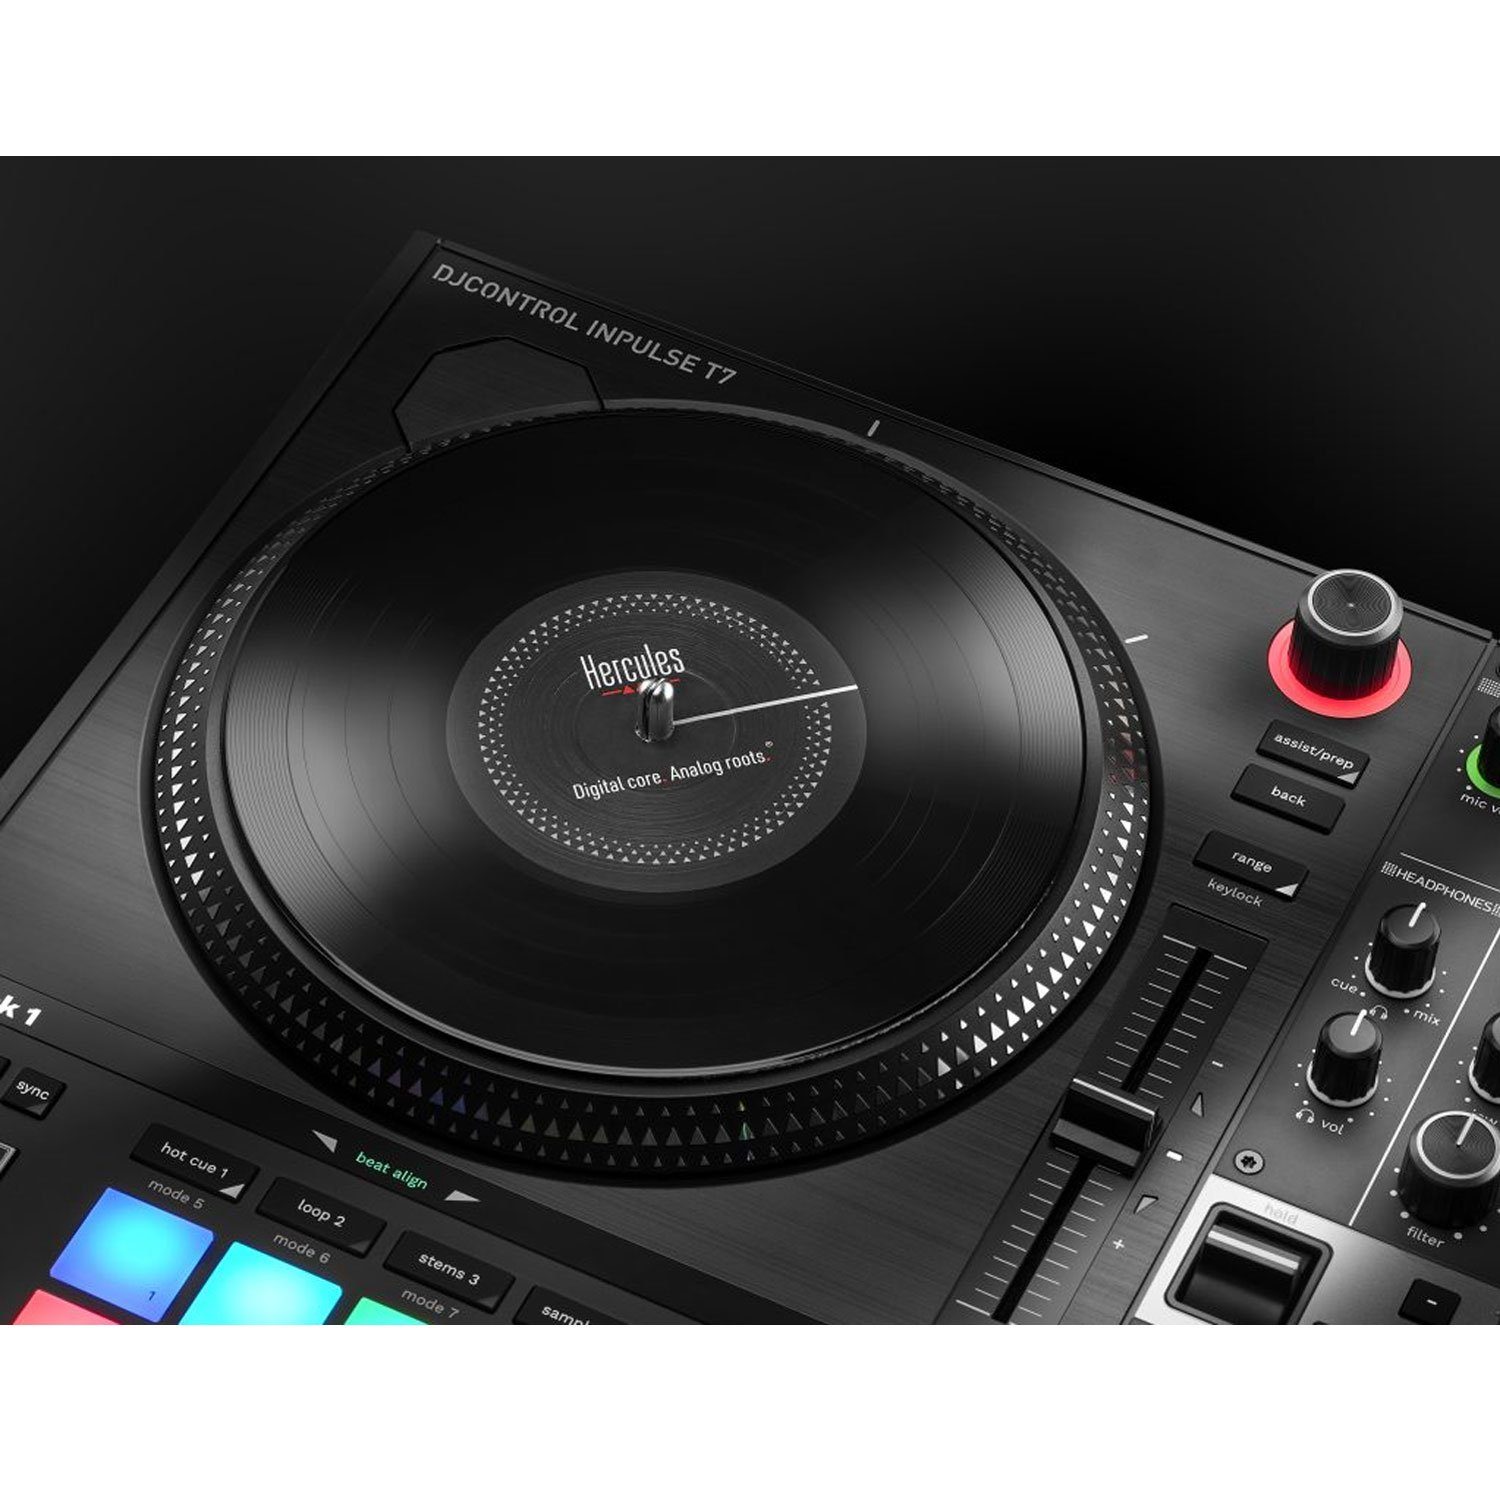 Inkl DJ T-7 Inpulse USB-DJ-Pult, Controller HERCULES 2-Deck DJ-Software DJControl